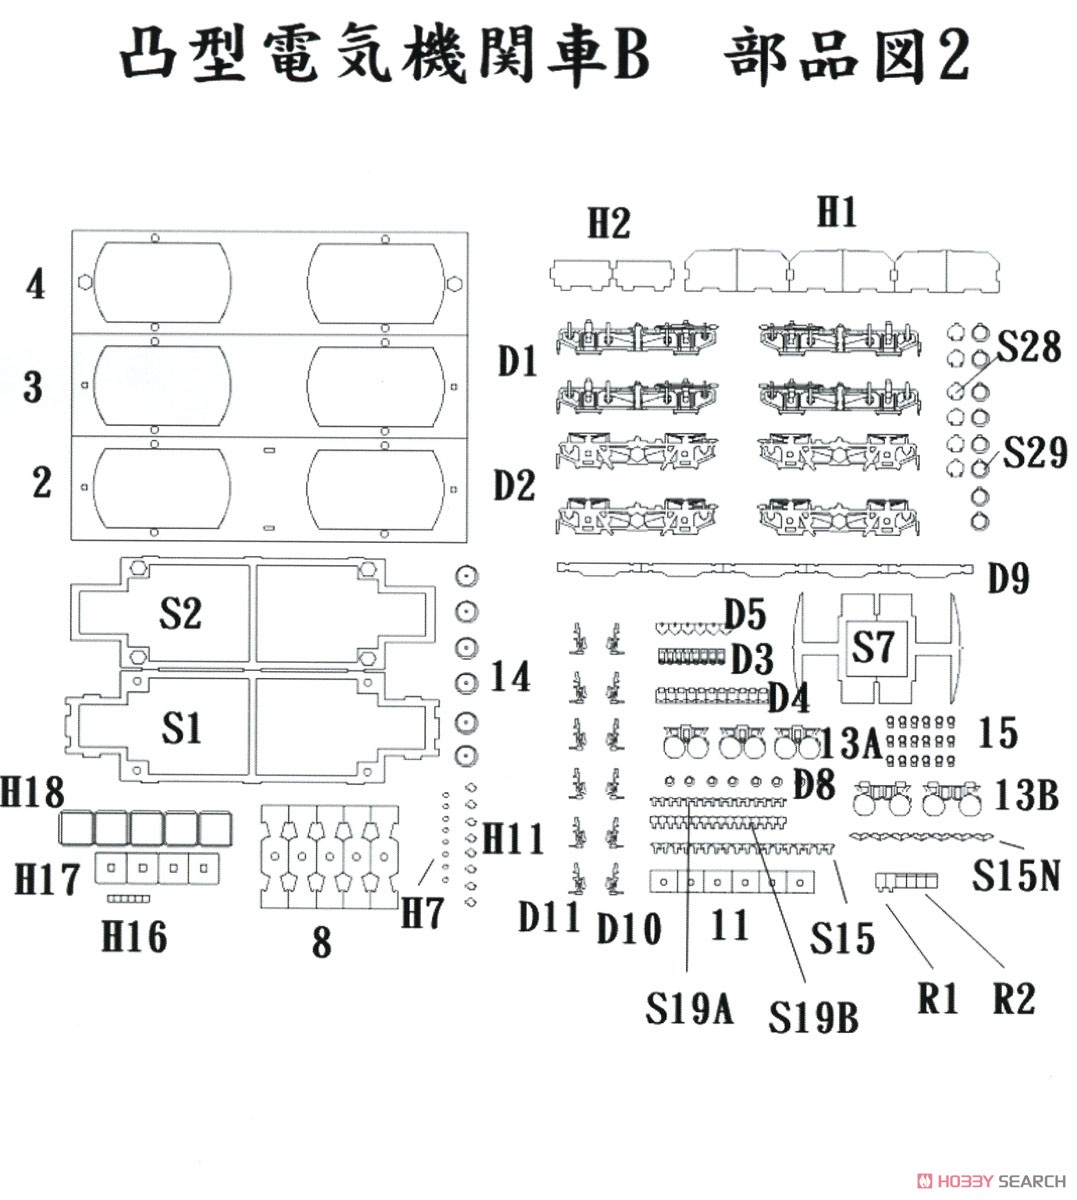 16番(HO) 凸型電気機関車B ペーパーキット (組み立てキット) (鉄道模型) 設計図2